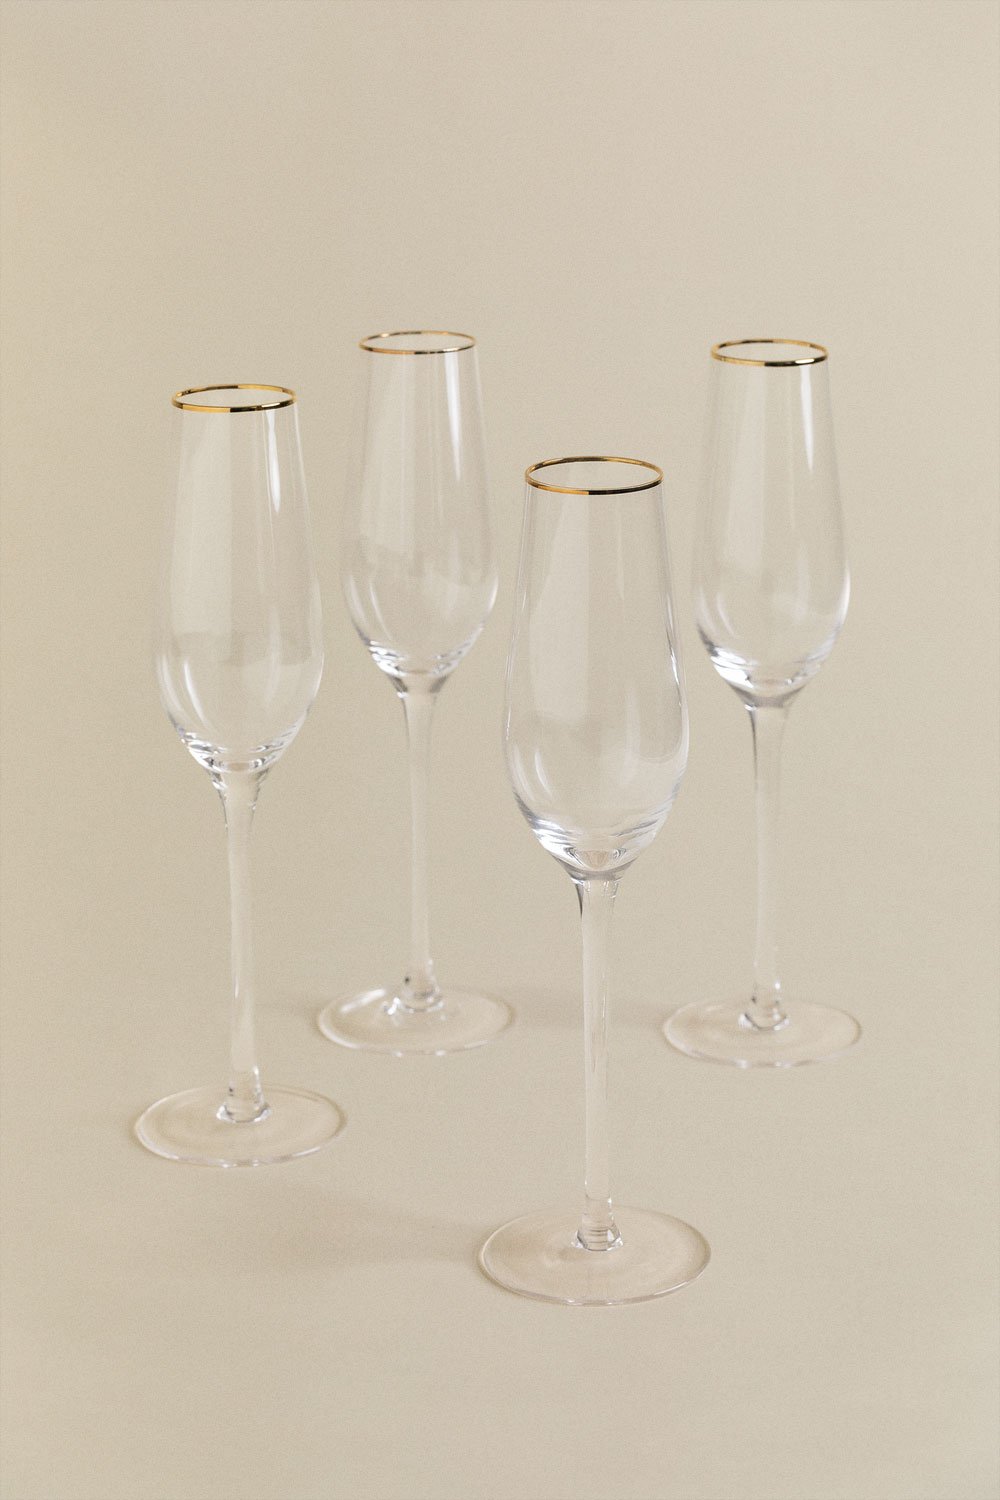 Set van 4 glazen champagneglazen 22 cl Arely, galerij beeld 2